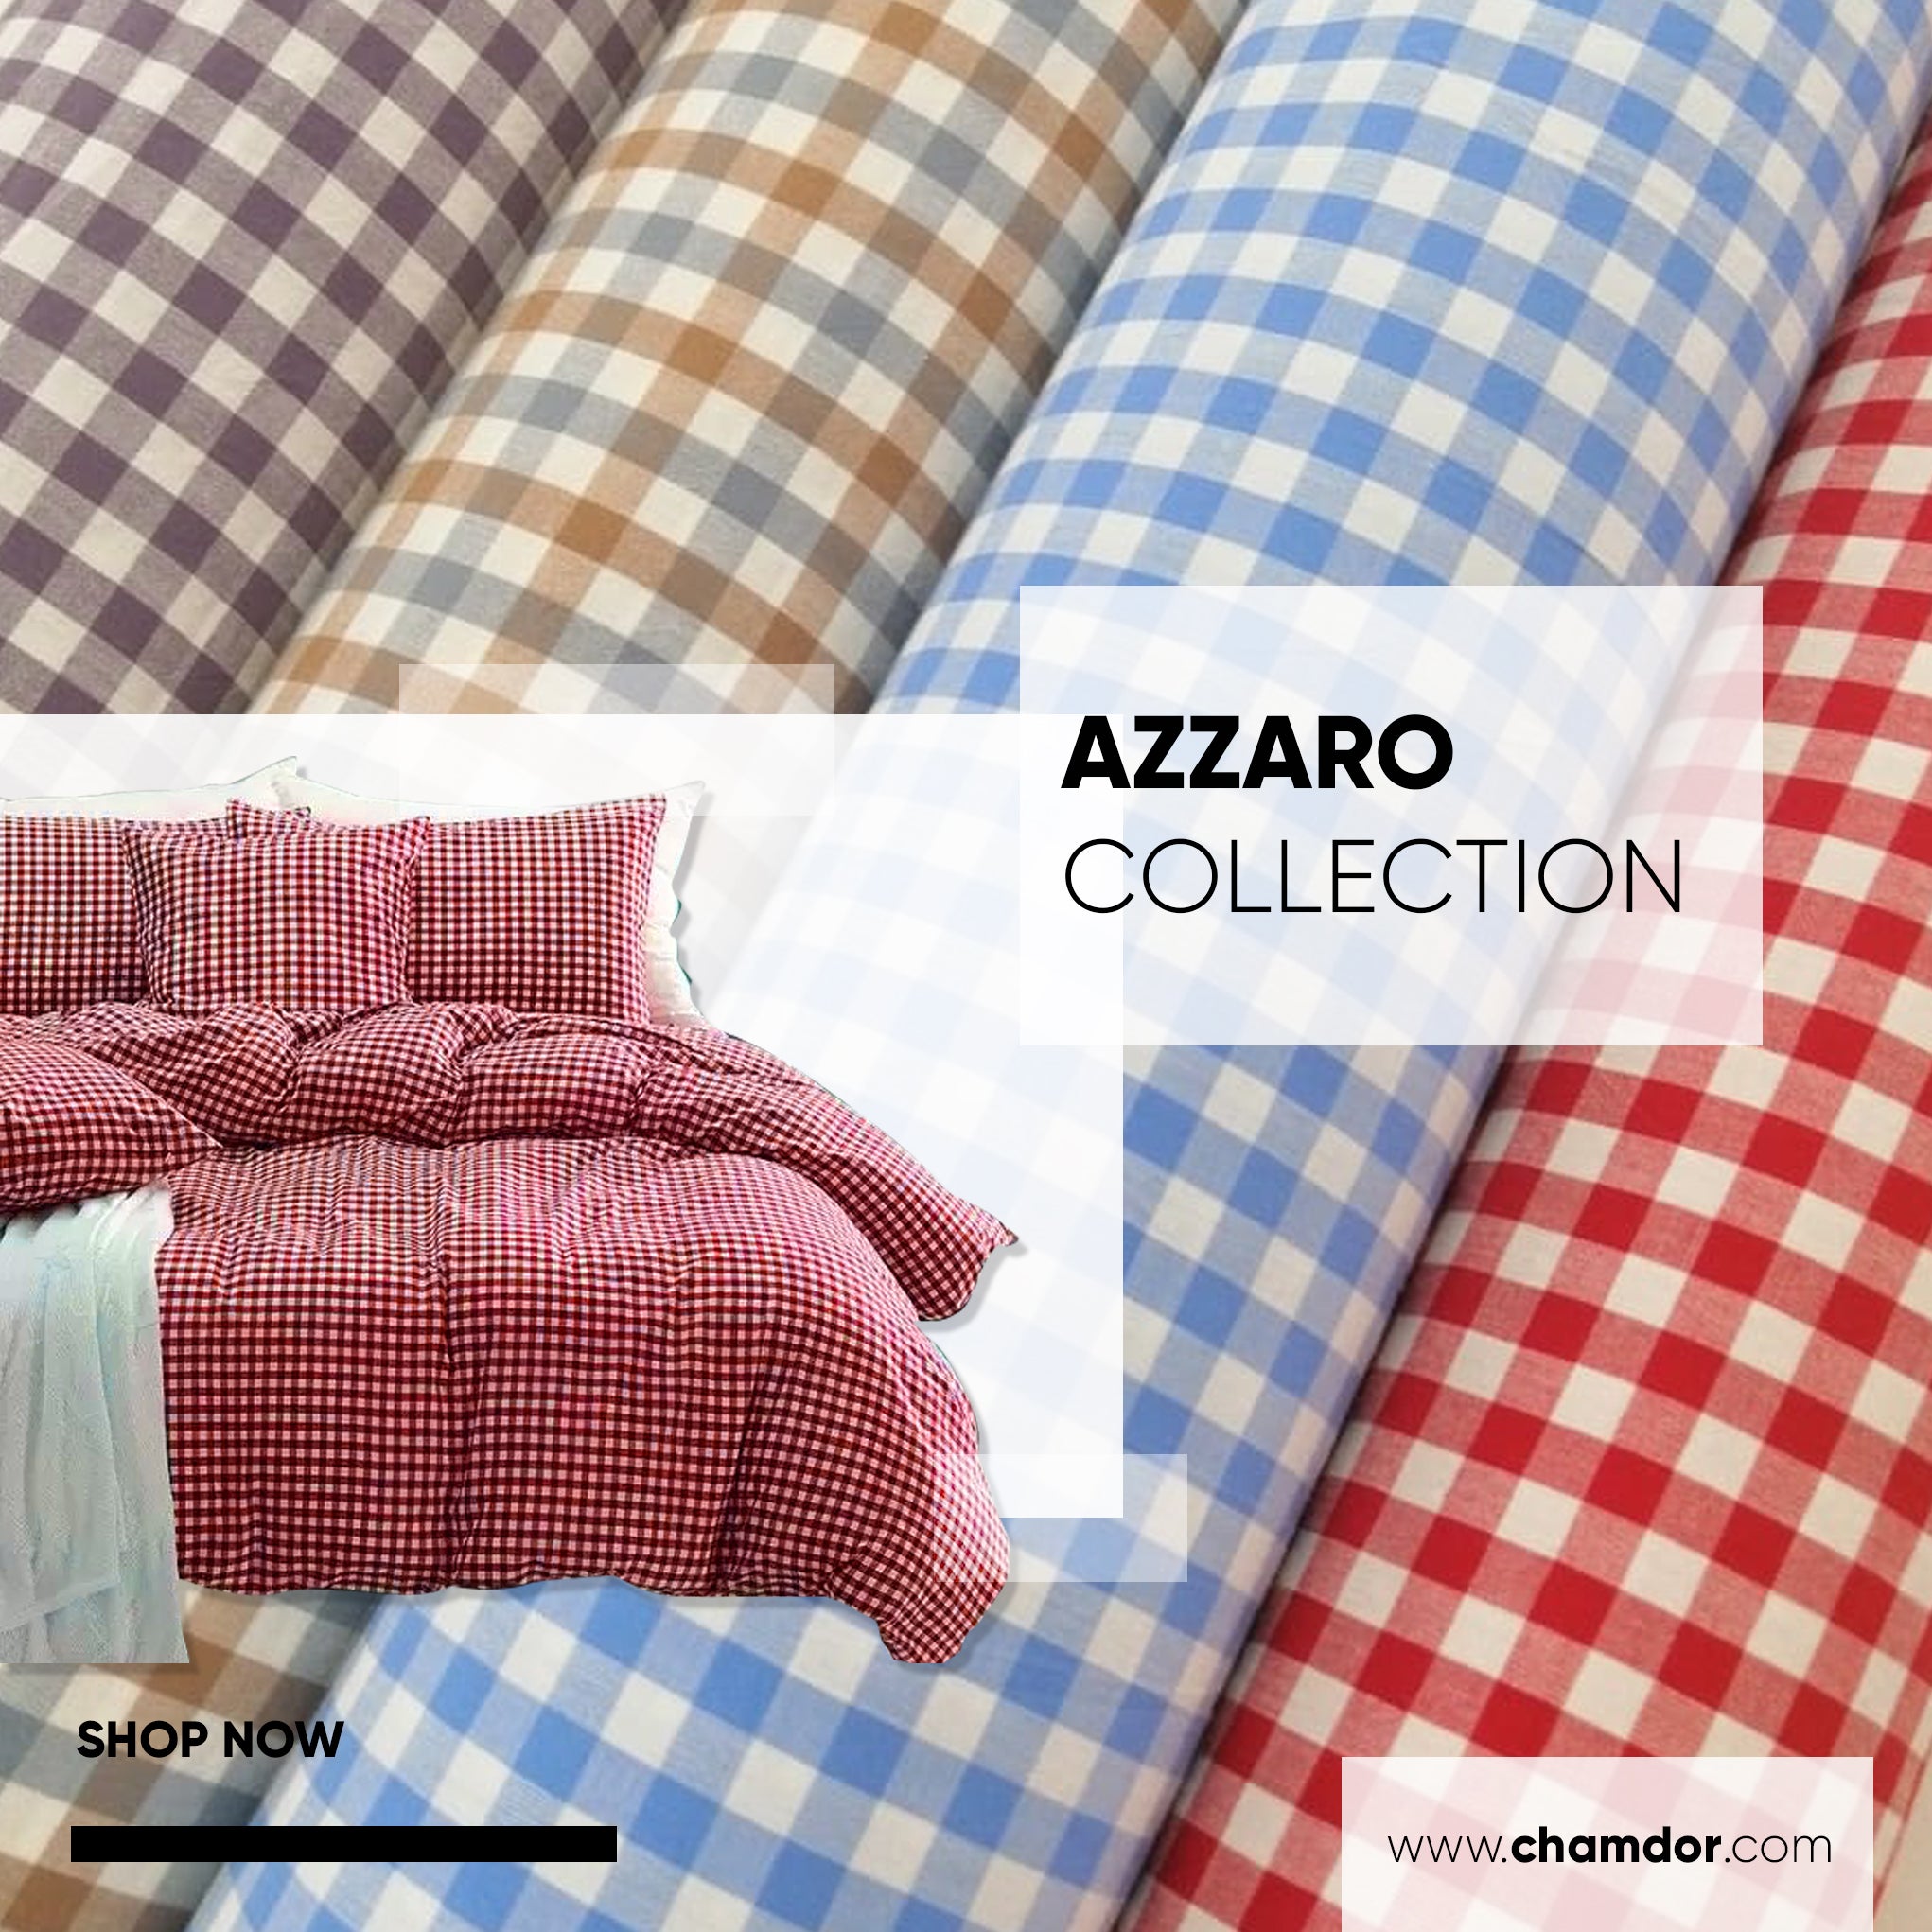 Azzaro Collection